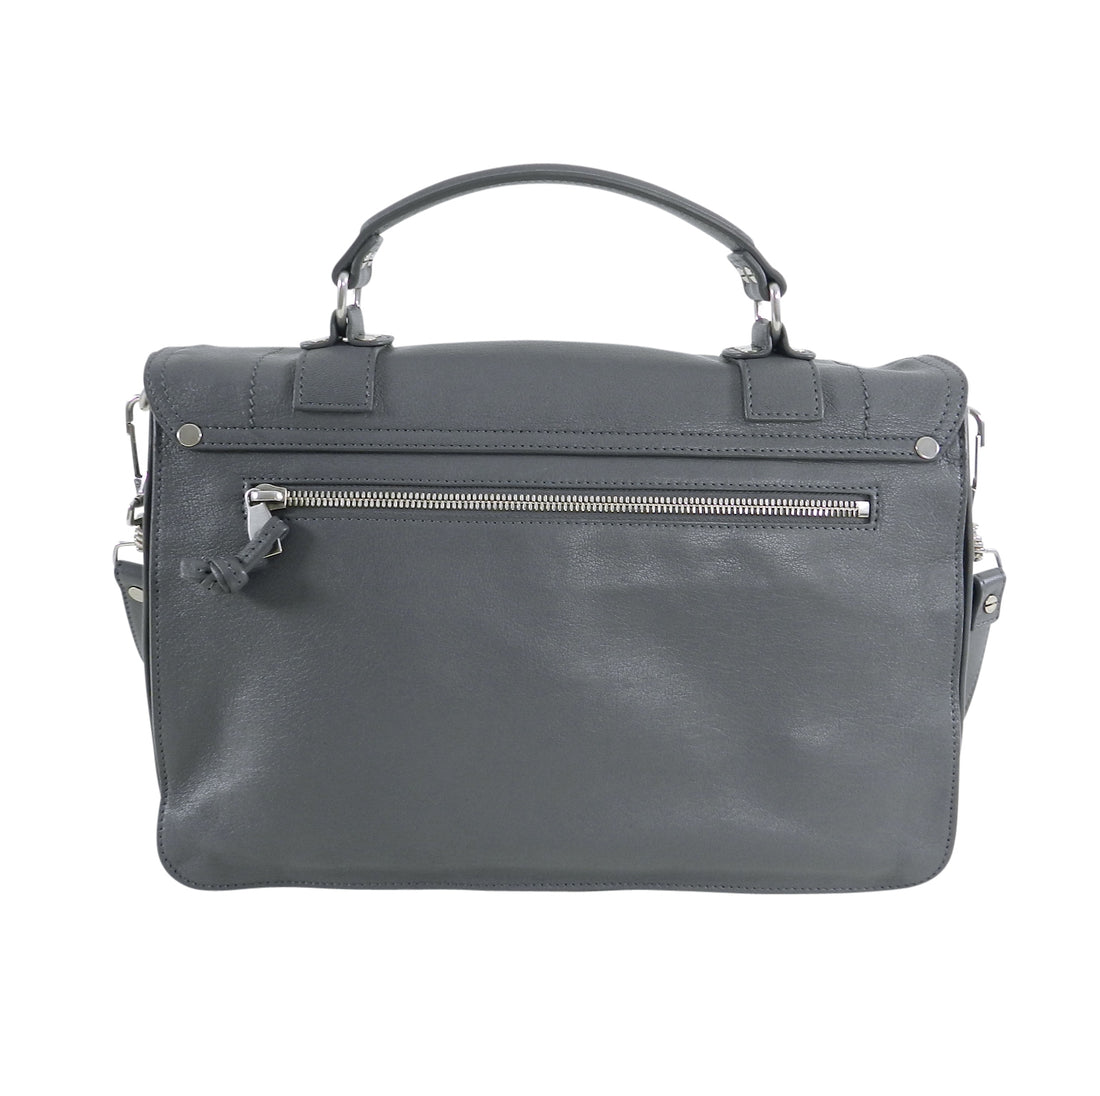 Proenza Schouler PS1 Medium Heather Grey Leather Satchel Bag